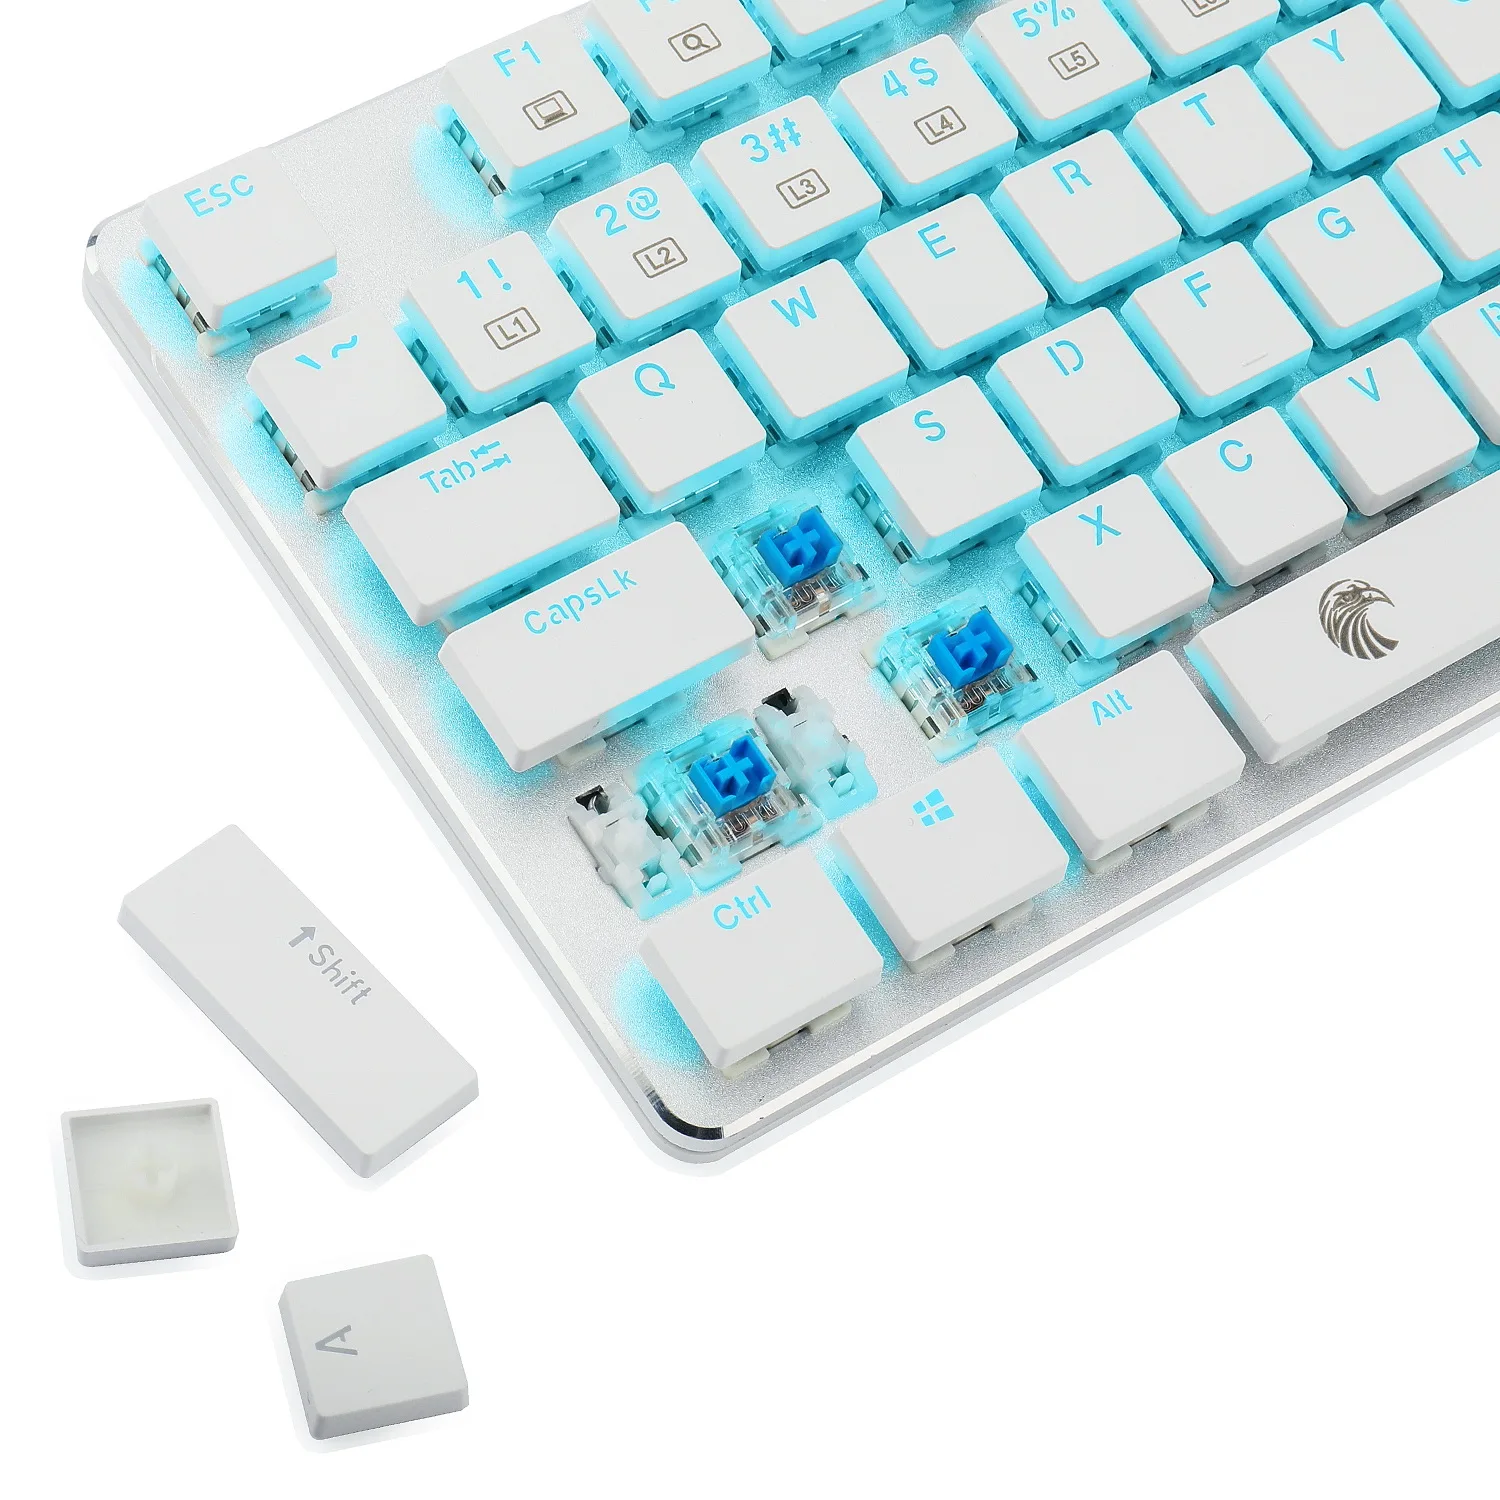 HUO JI Low Profile Crystal Mechanical Keyboard Full Size 104 Keys E-Yooso OA Blue Led Backlit Wired Keyboard enlarge